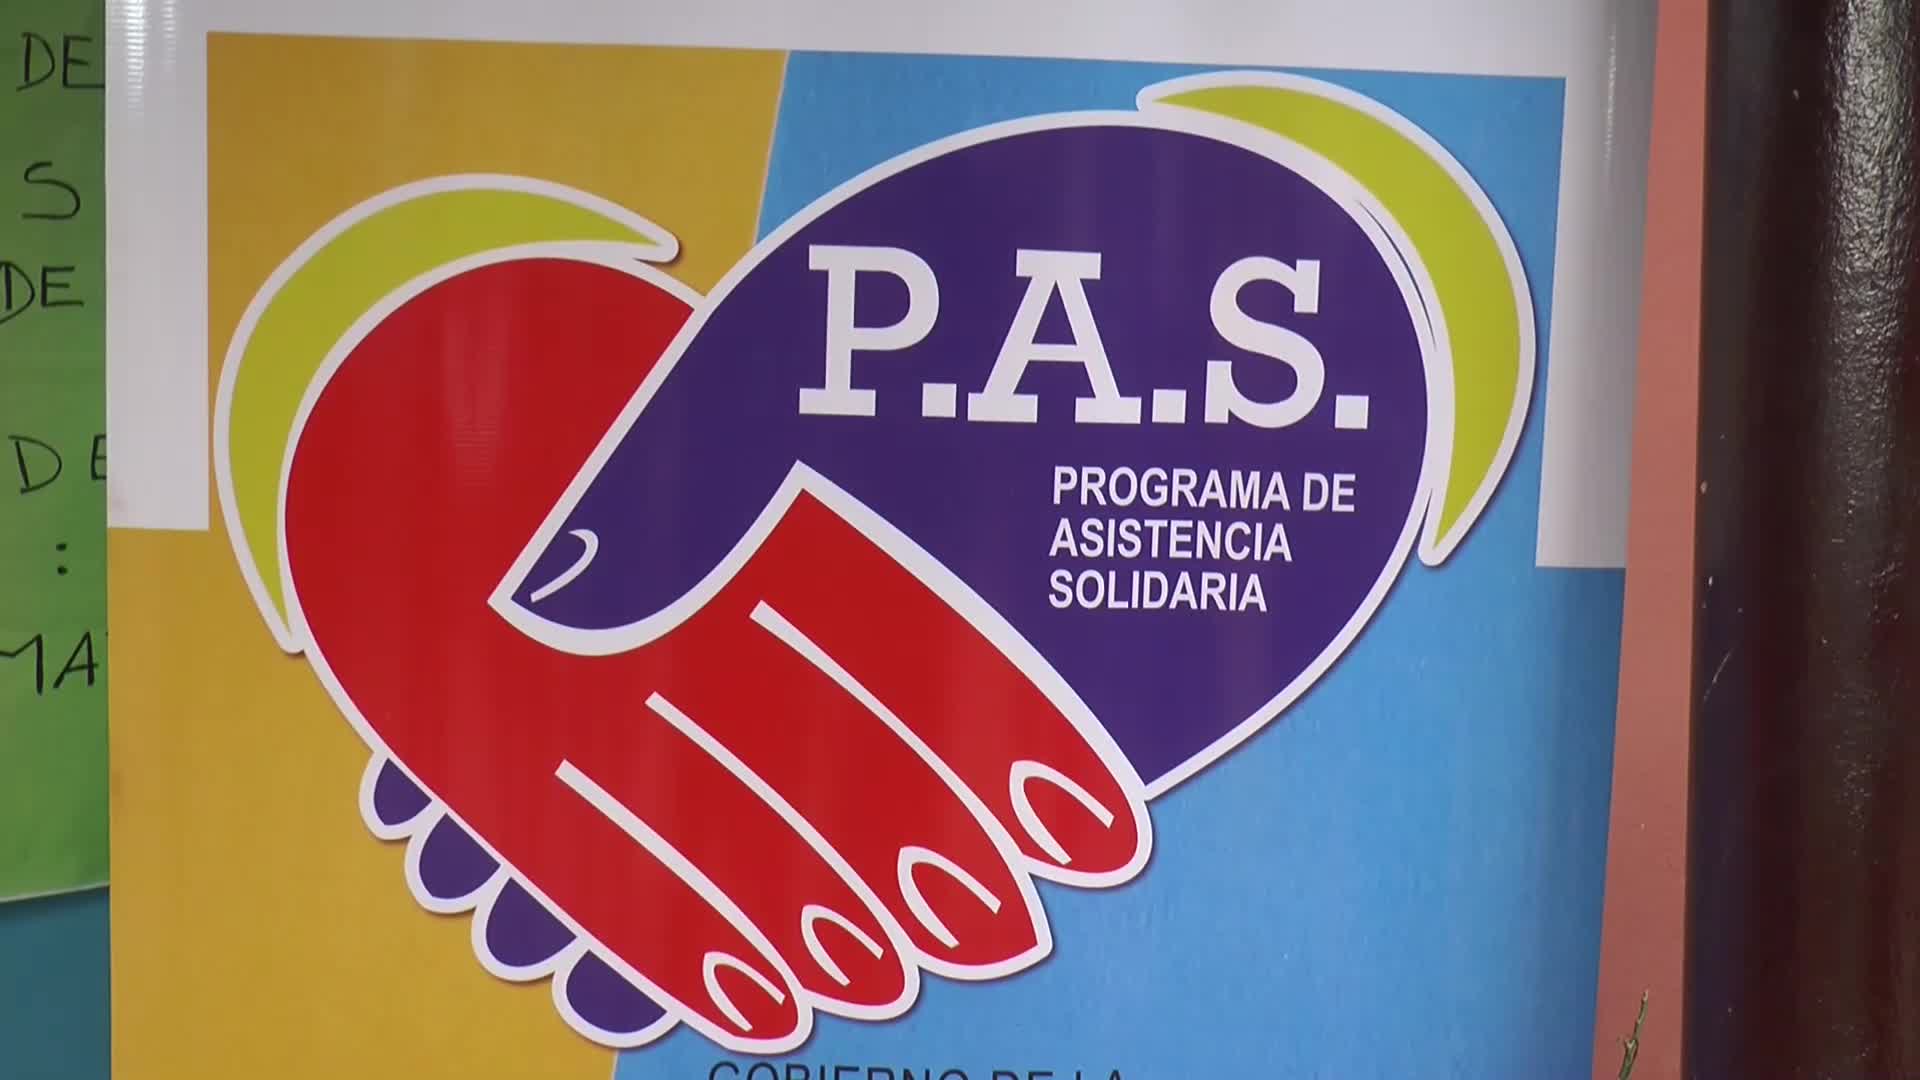 Posadas: programa de asistencia solidaria P.A.S. en la Escuela n°827 